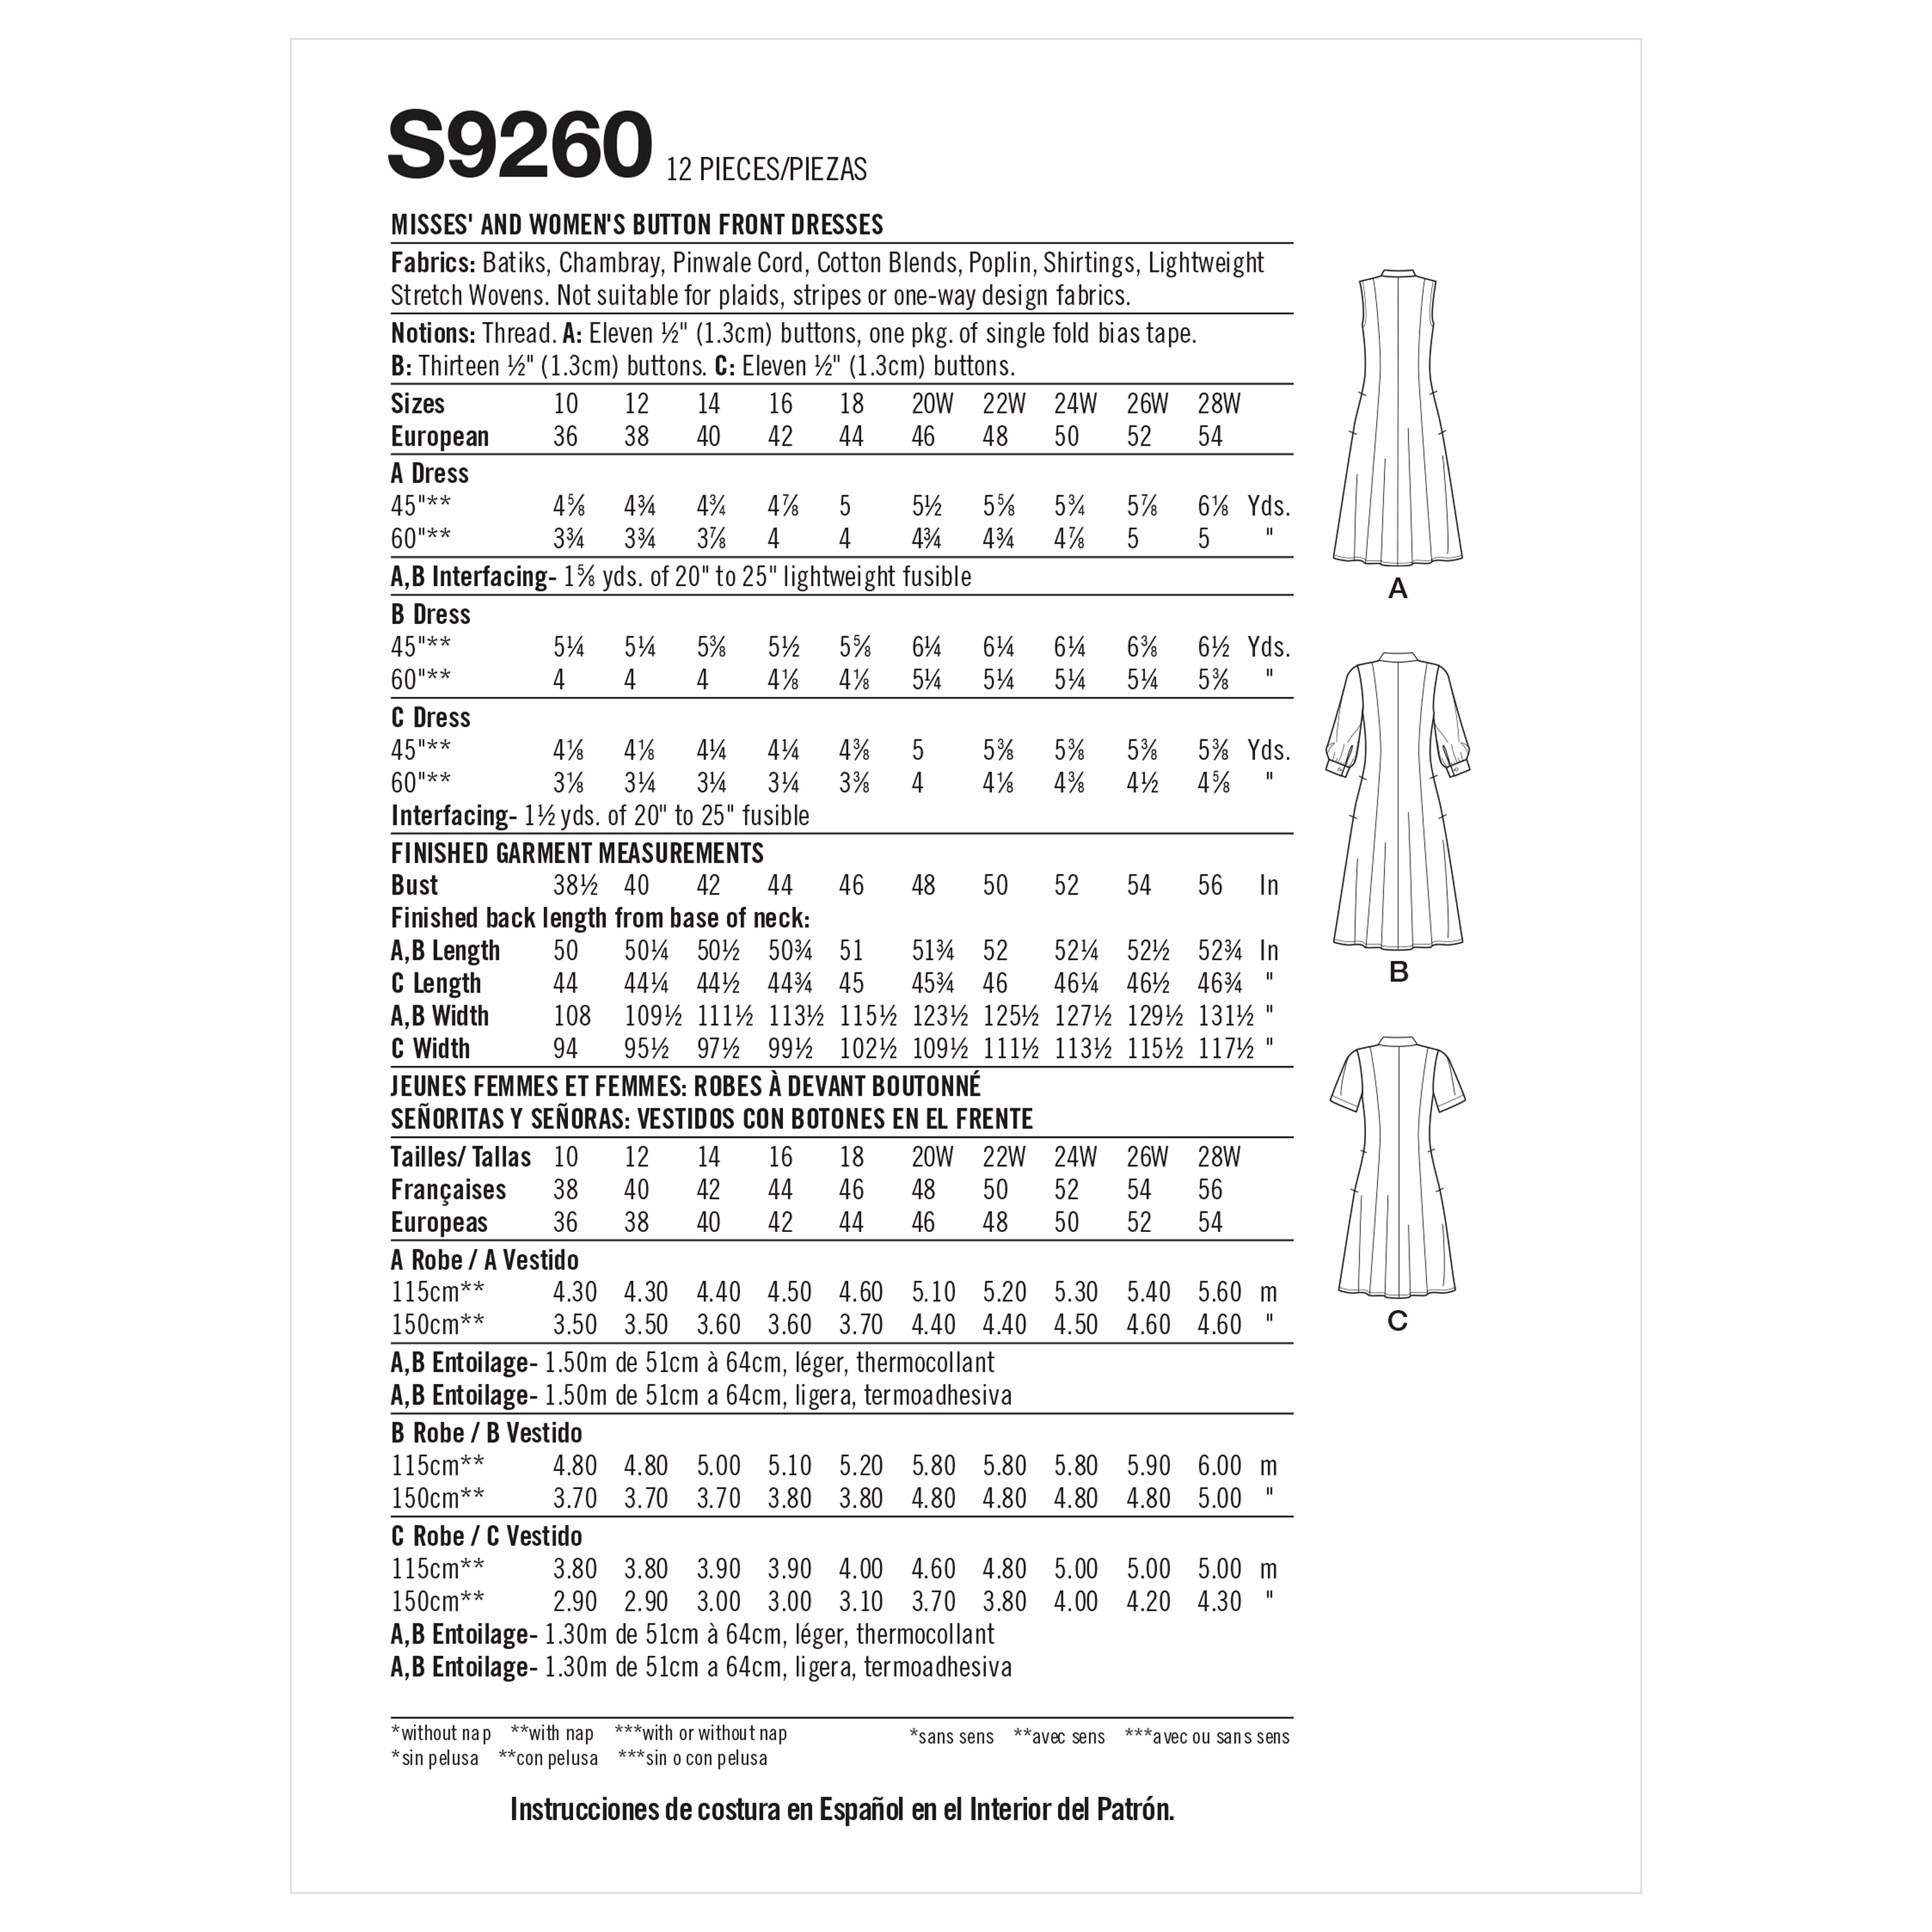 Patron Simplicity 9260 - Robe Chemisier du 38 au 56 (FR)